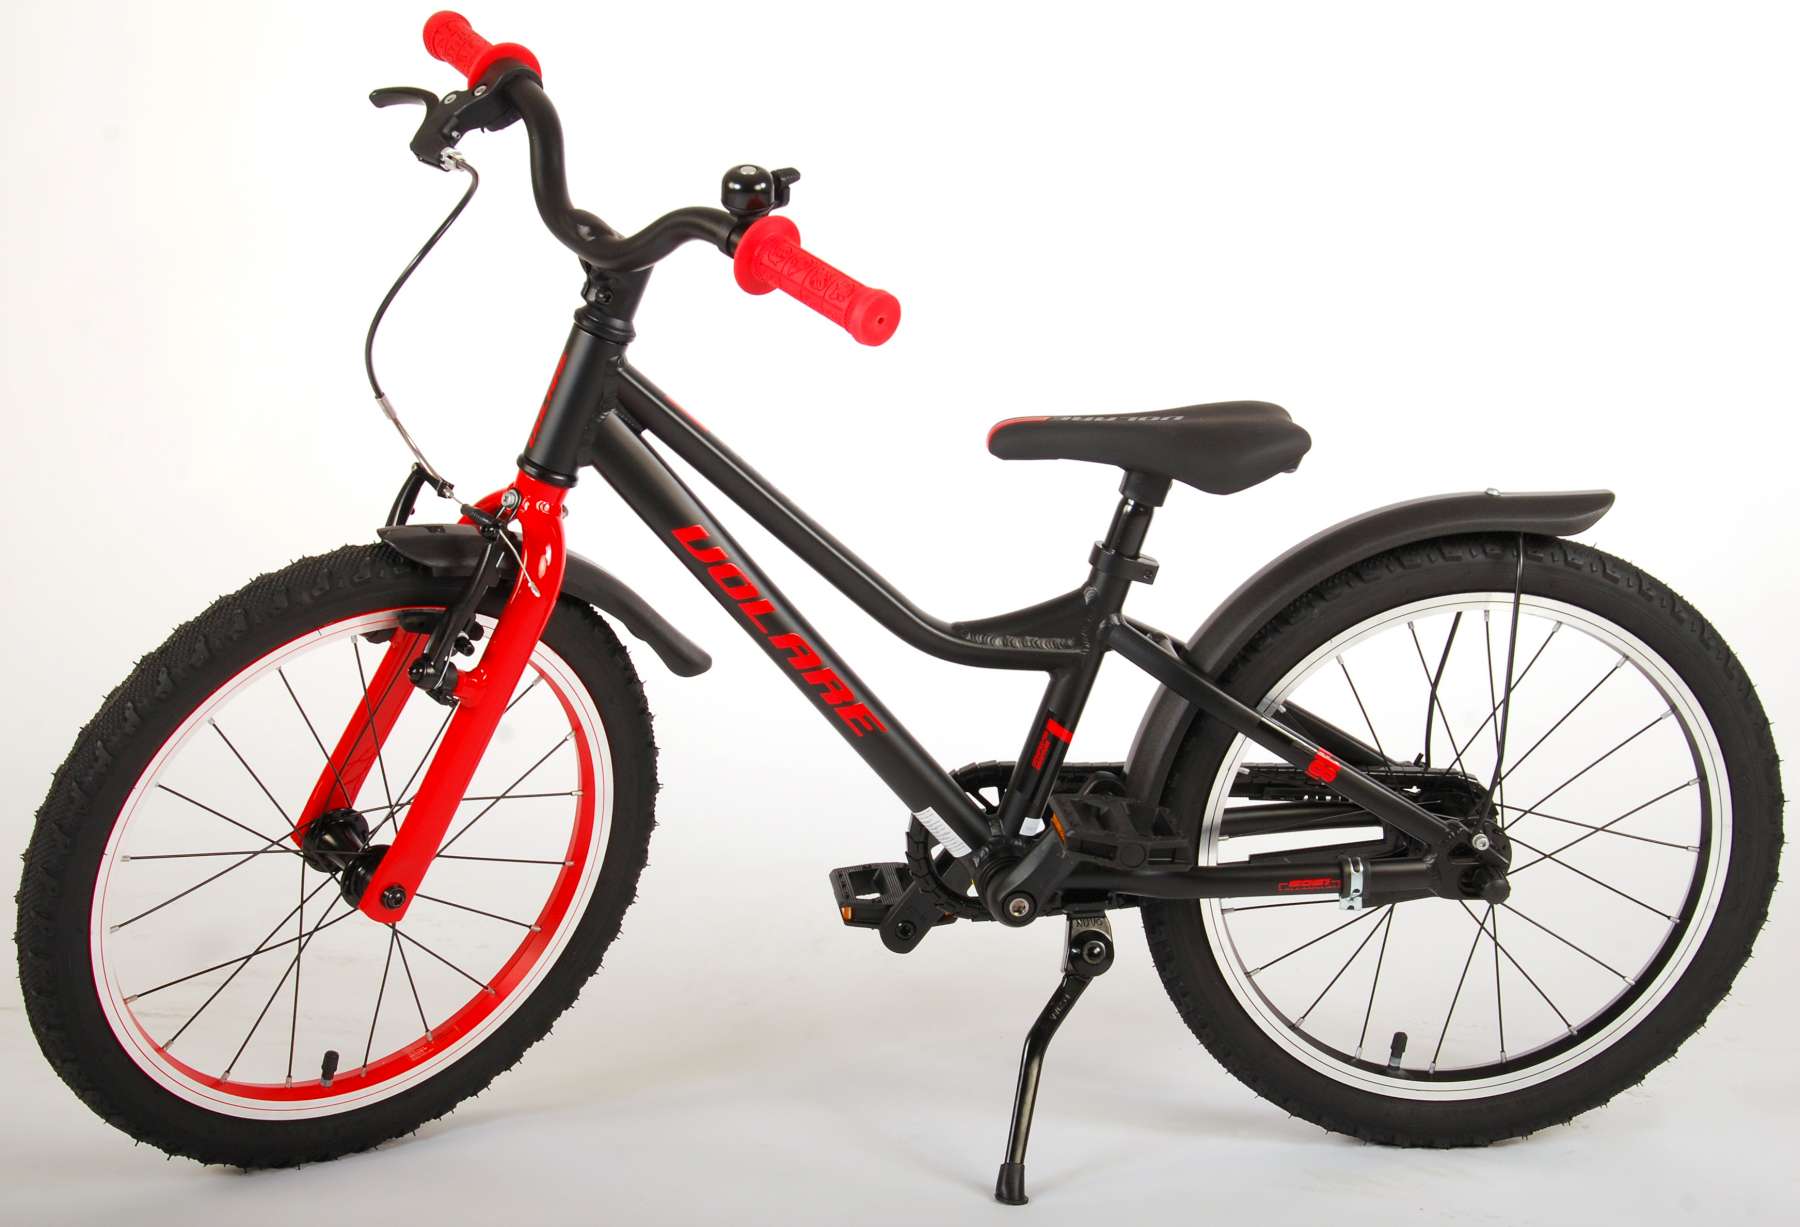 Kinderfahrrad Blaster Fahrrad für Jungen 18 Zoll Kinderrad Schwarz Rot